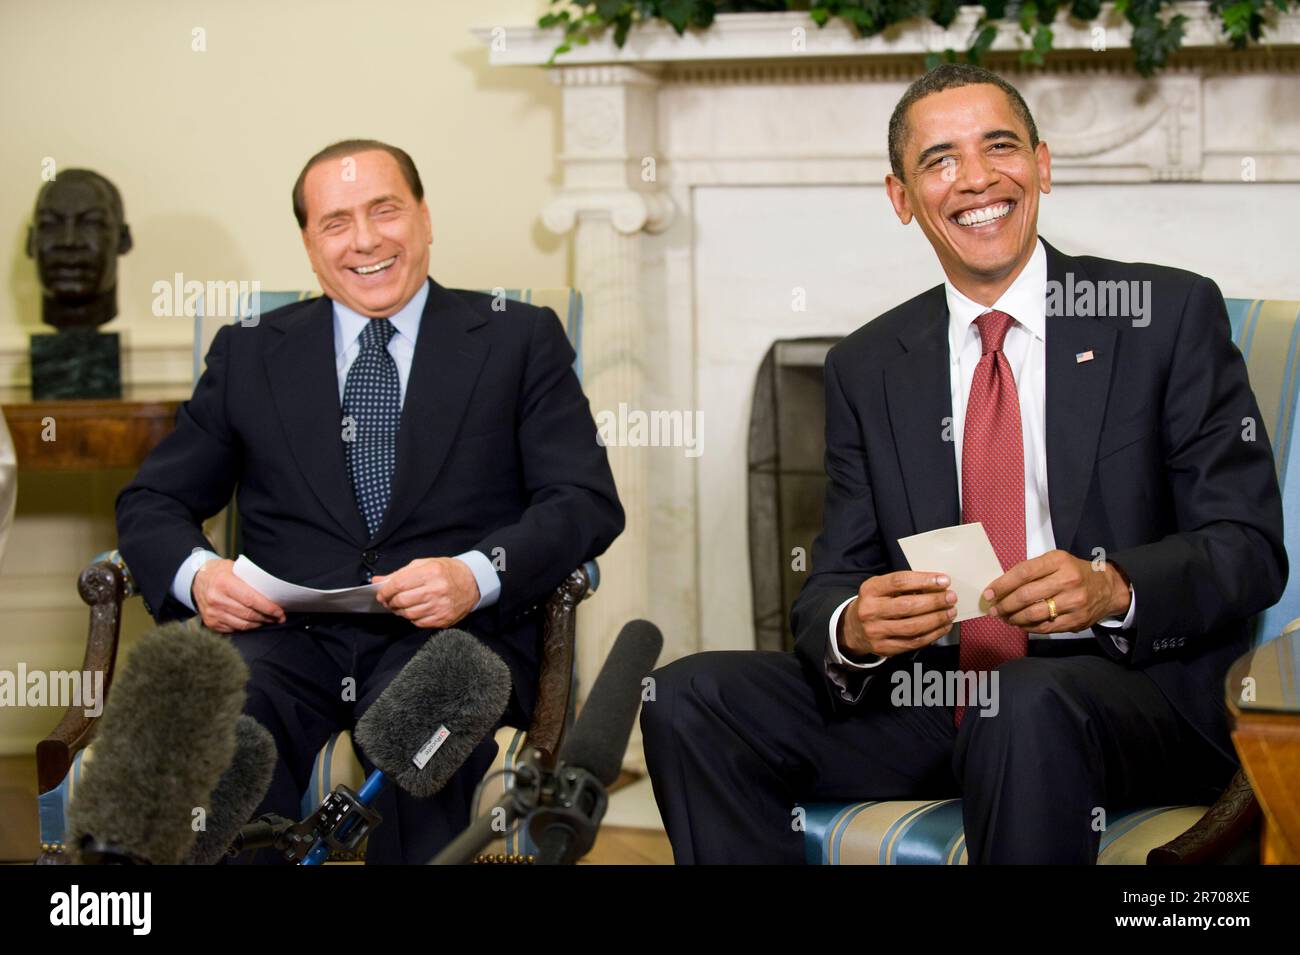 Washington, DC - 15. Juni 2009 -- US-Präsident Barack Obama (R) trifft am Montag, 15. Juni 2009 im Oval Office des Weißen Hauses mit Premierminister Silvio Berlusconi aus Italien zusammen. Die beiden Staats- und Regierungschefs trafen sich im Vorfeld des G8-Gipfels, der nächsten Monat in Italien stattfinden wird.Kredit: Matthew Cavanaugh - Pool über CNP Stockfoto